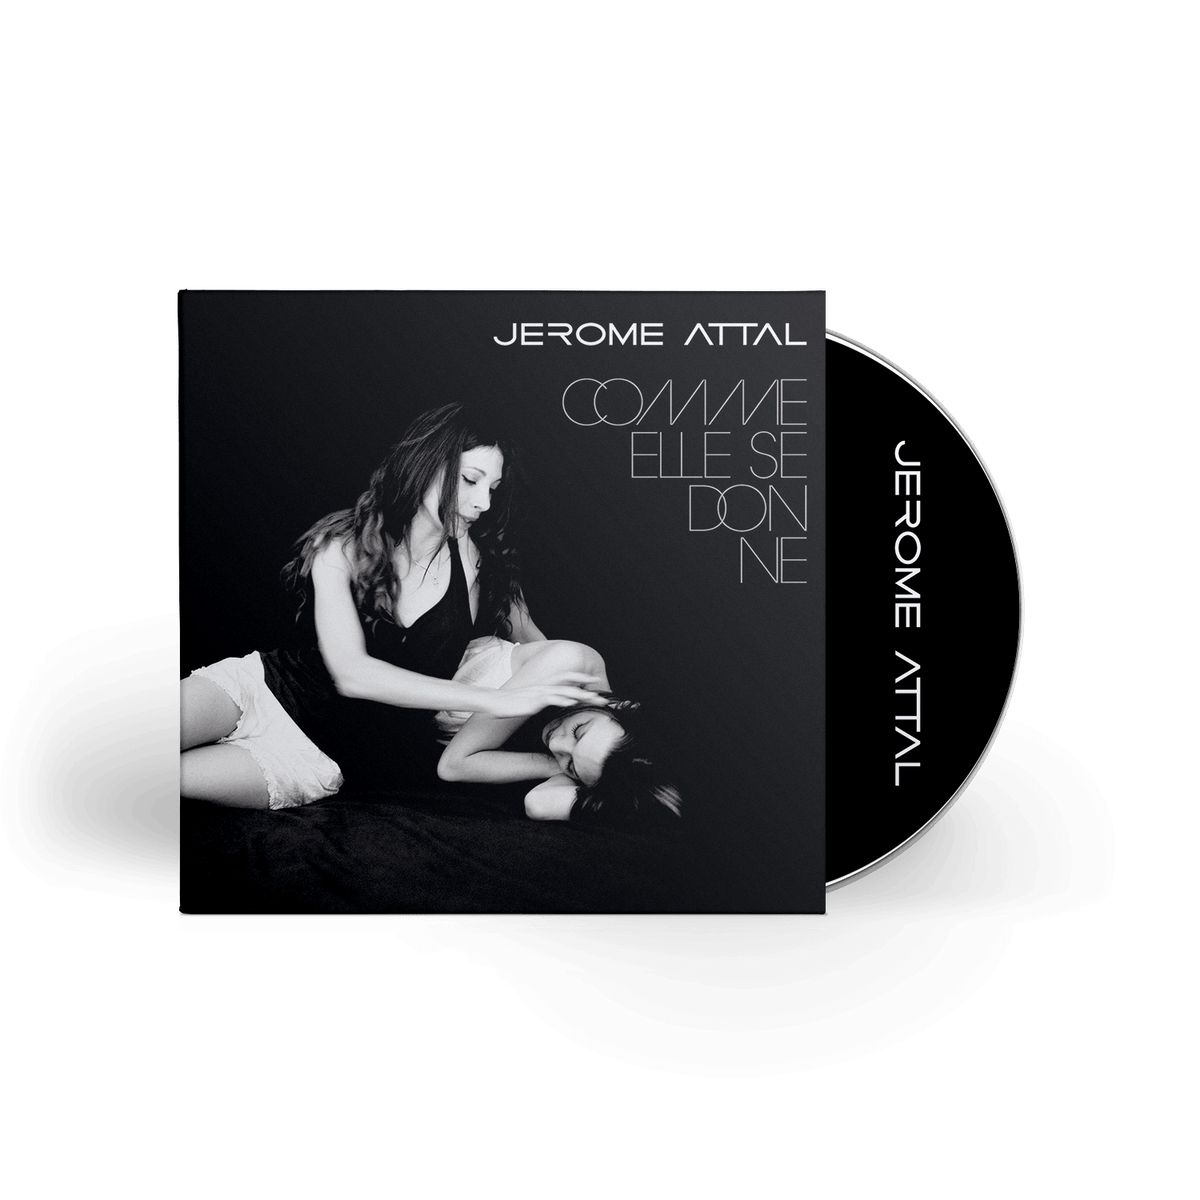 Jérôme Attal - Comme elle se donne - CD